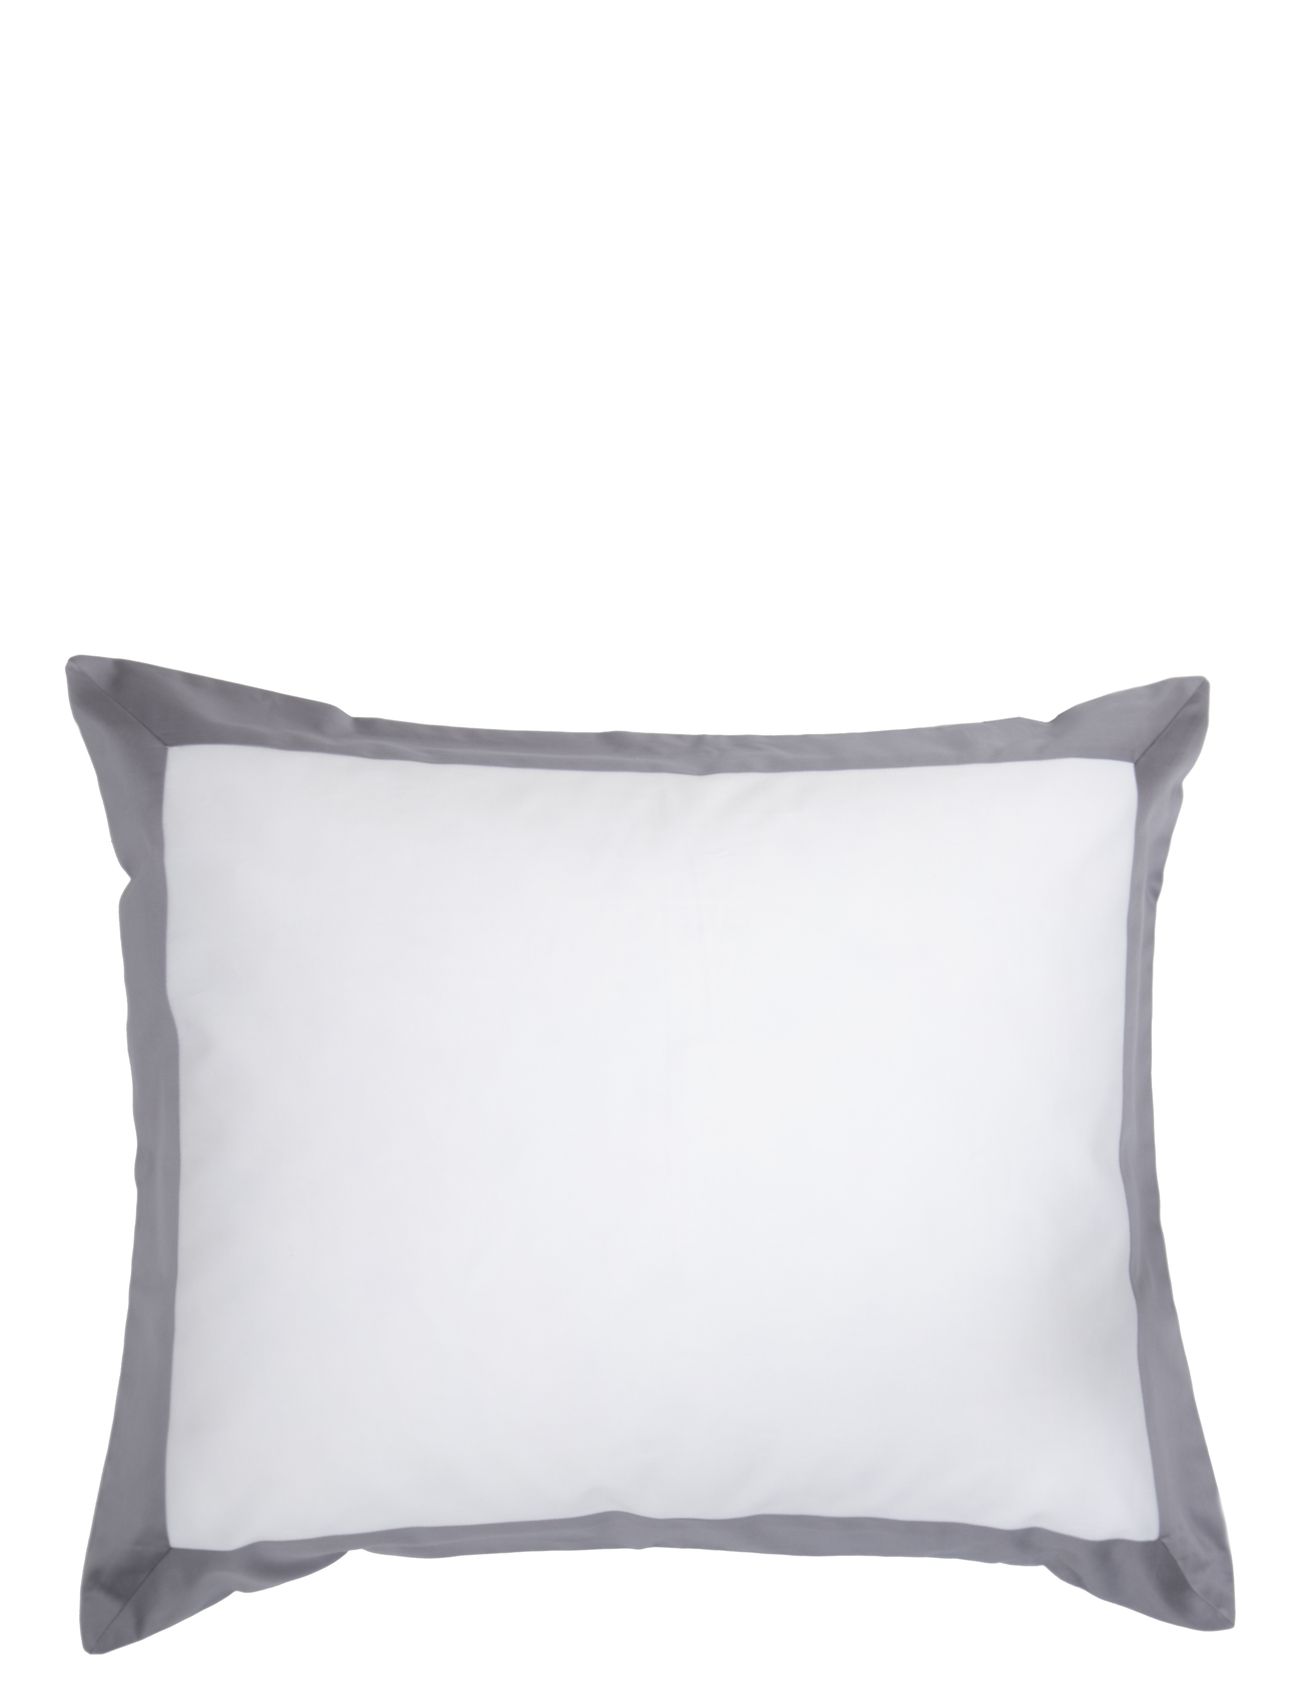 Mille Notti Sobrio Pillowcase Home Textiles Bedtextiles Pillow Cases Grå Mille Notti